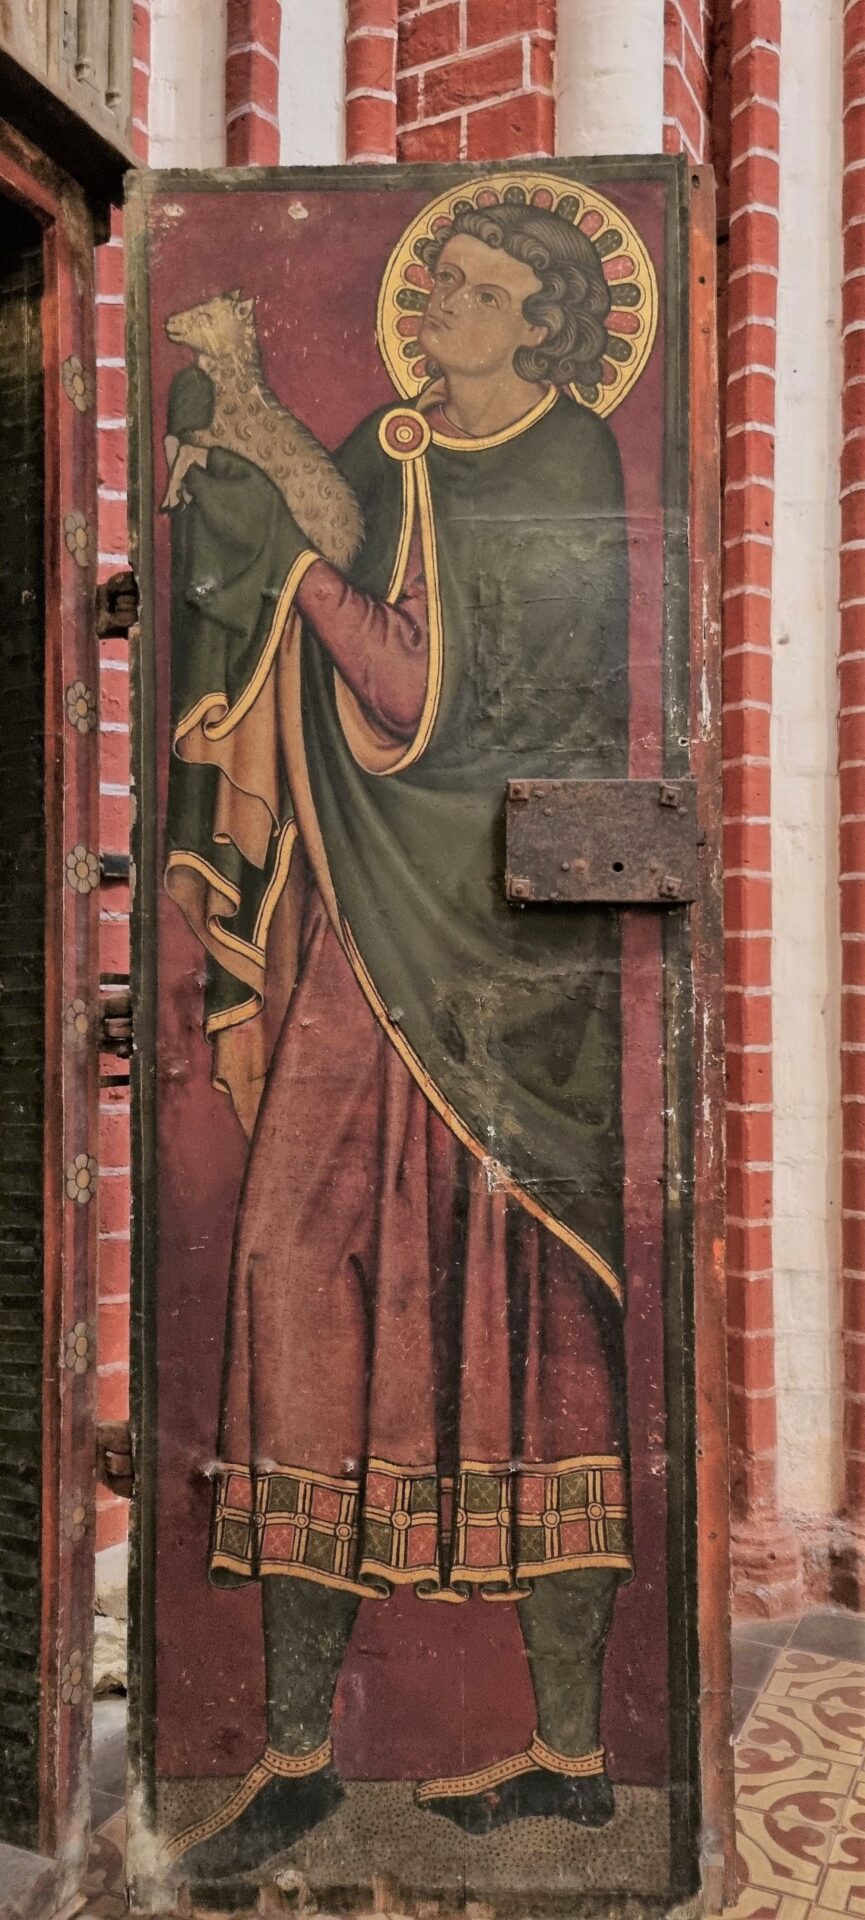 Die kunstgeschichtliche Einordnung zum mittelalterlicher Kelchschrank mit Schnitzplastik und unrestaurierter Polychromie erhielten wir von der Kunsthistorikerin Dr. Kaja von Cossart. Unglaublich frisch wirken die unrestaurierten Bemalungen auf den Türflügel-Innenseiten (Foto: Sven Taubert)